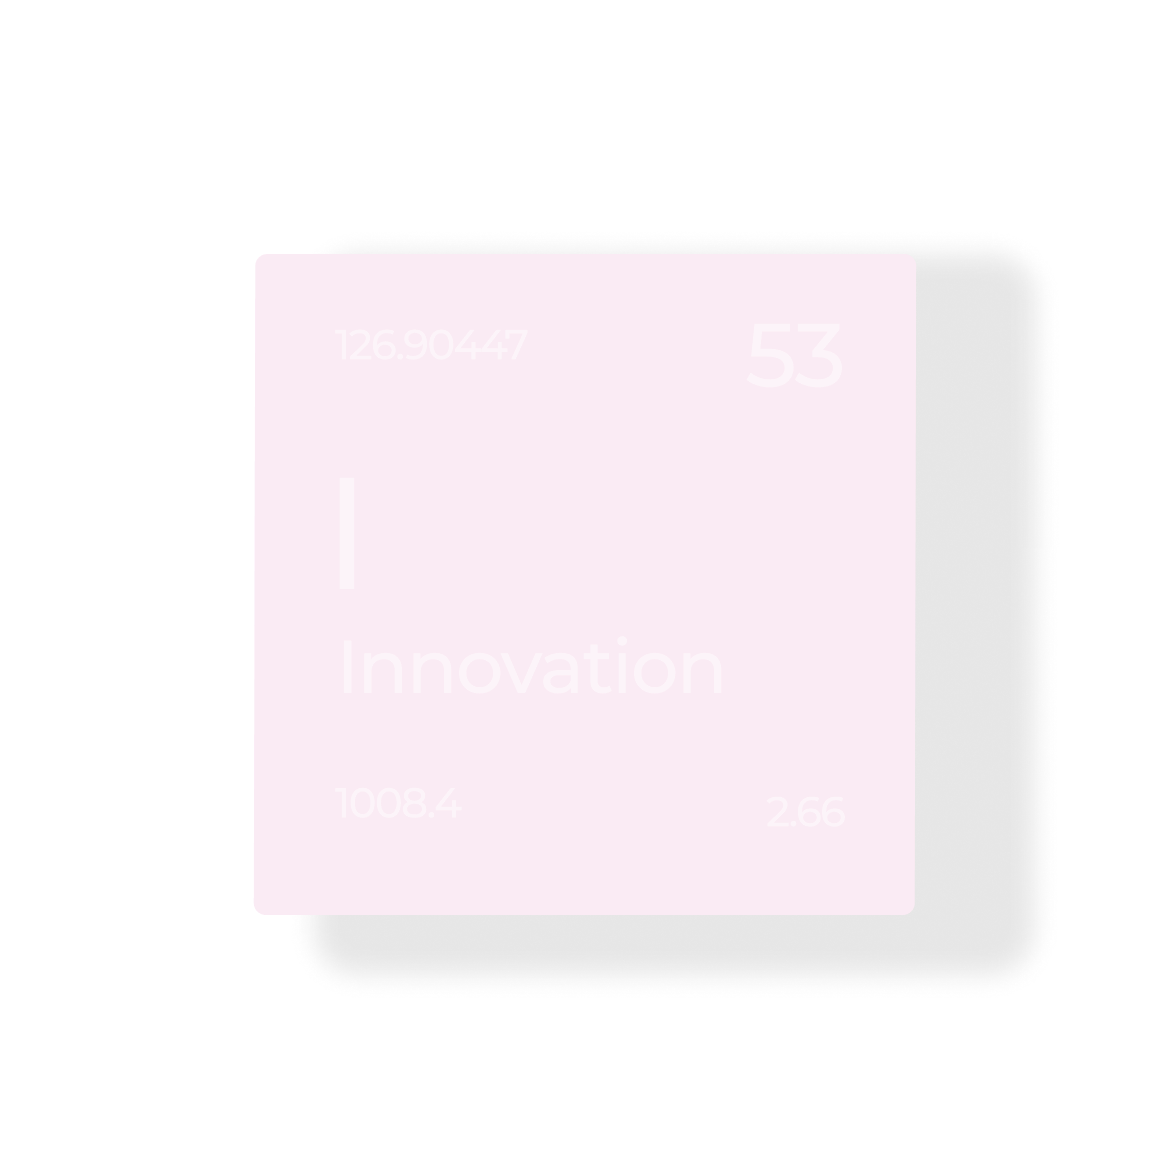 карточка похожая на химический элемент с элементом под названием Инновация